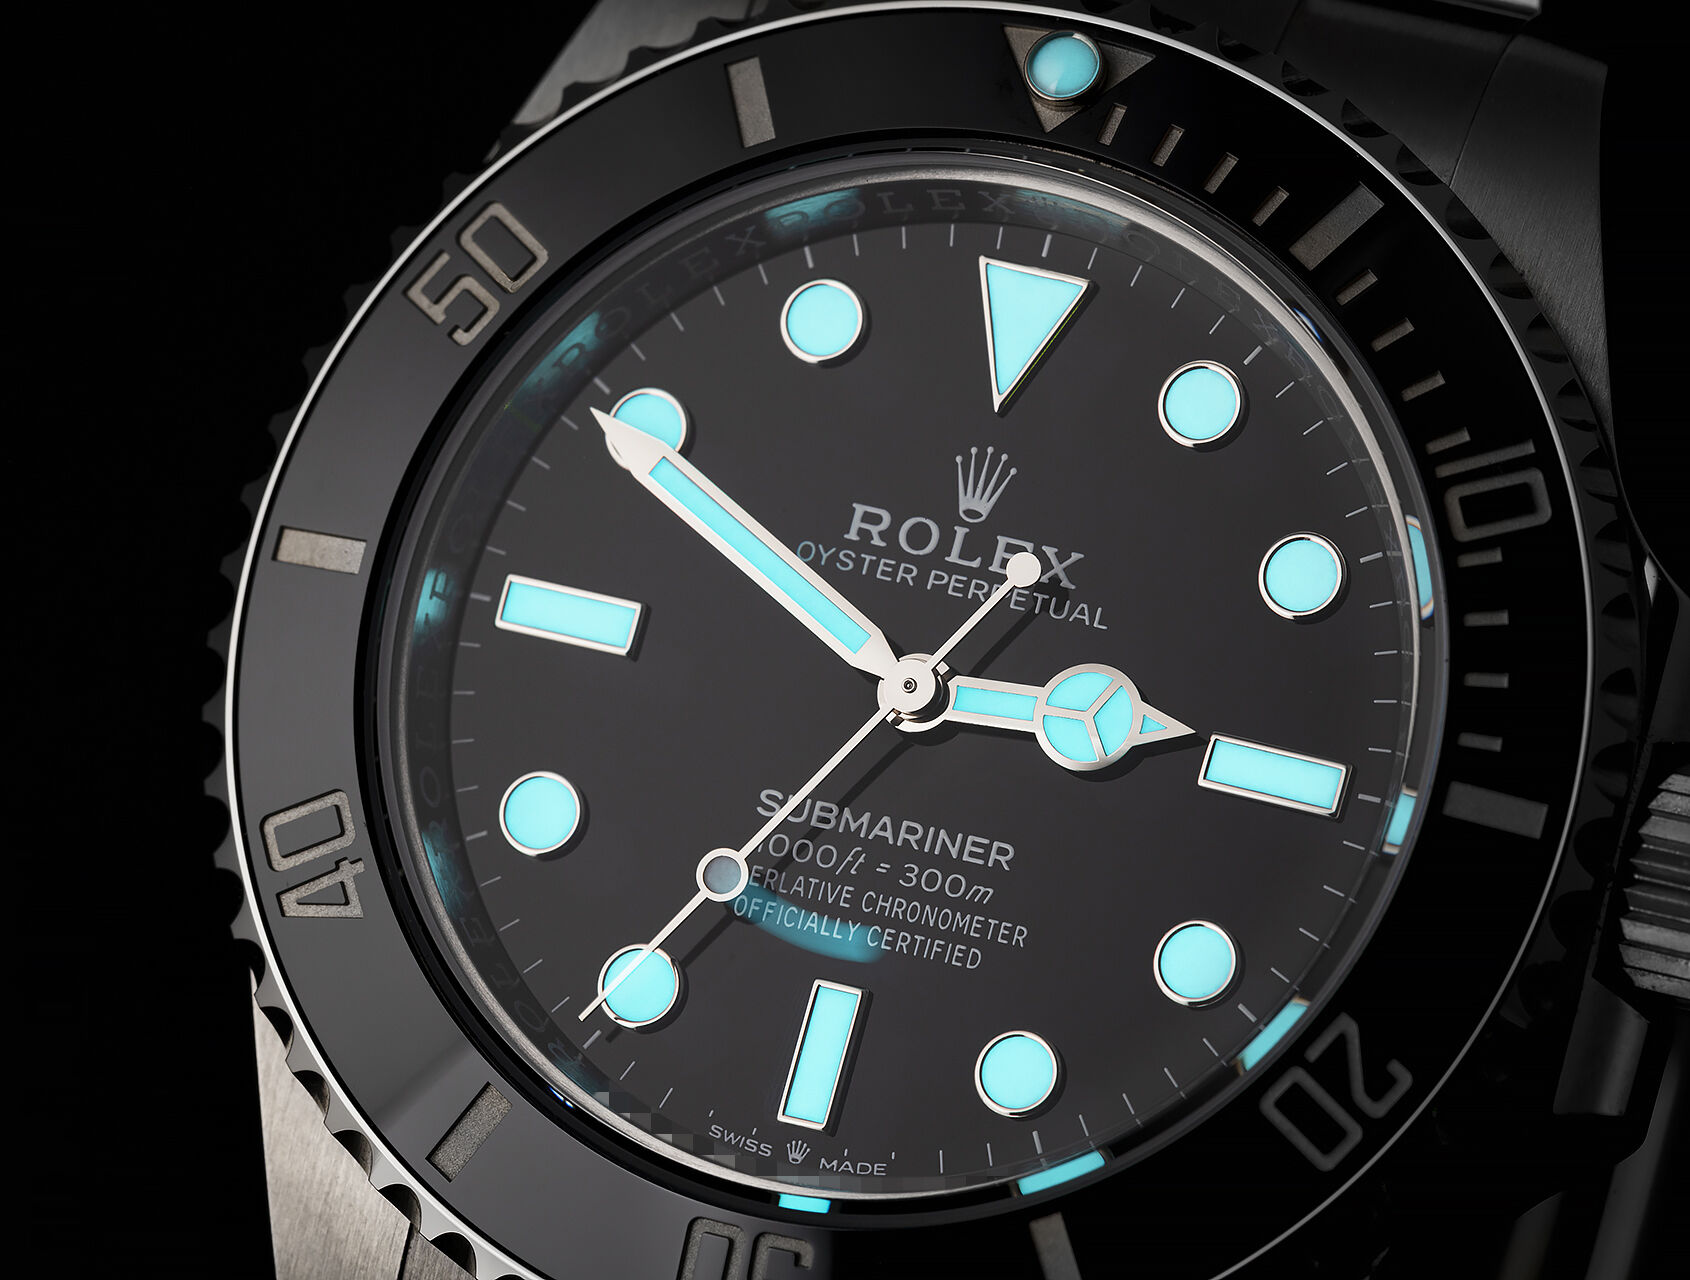 ref 124060 | 124060 - Box & Certificate | Rolex Submariner 